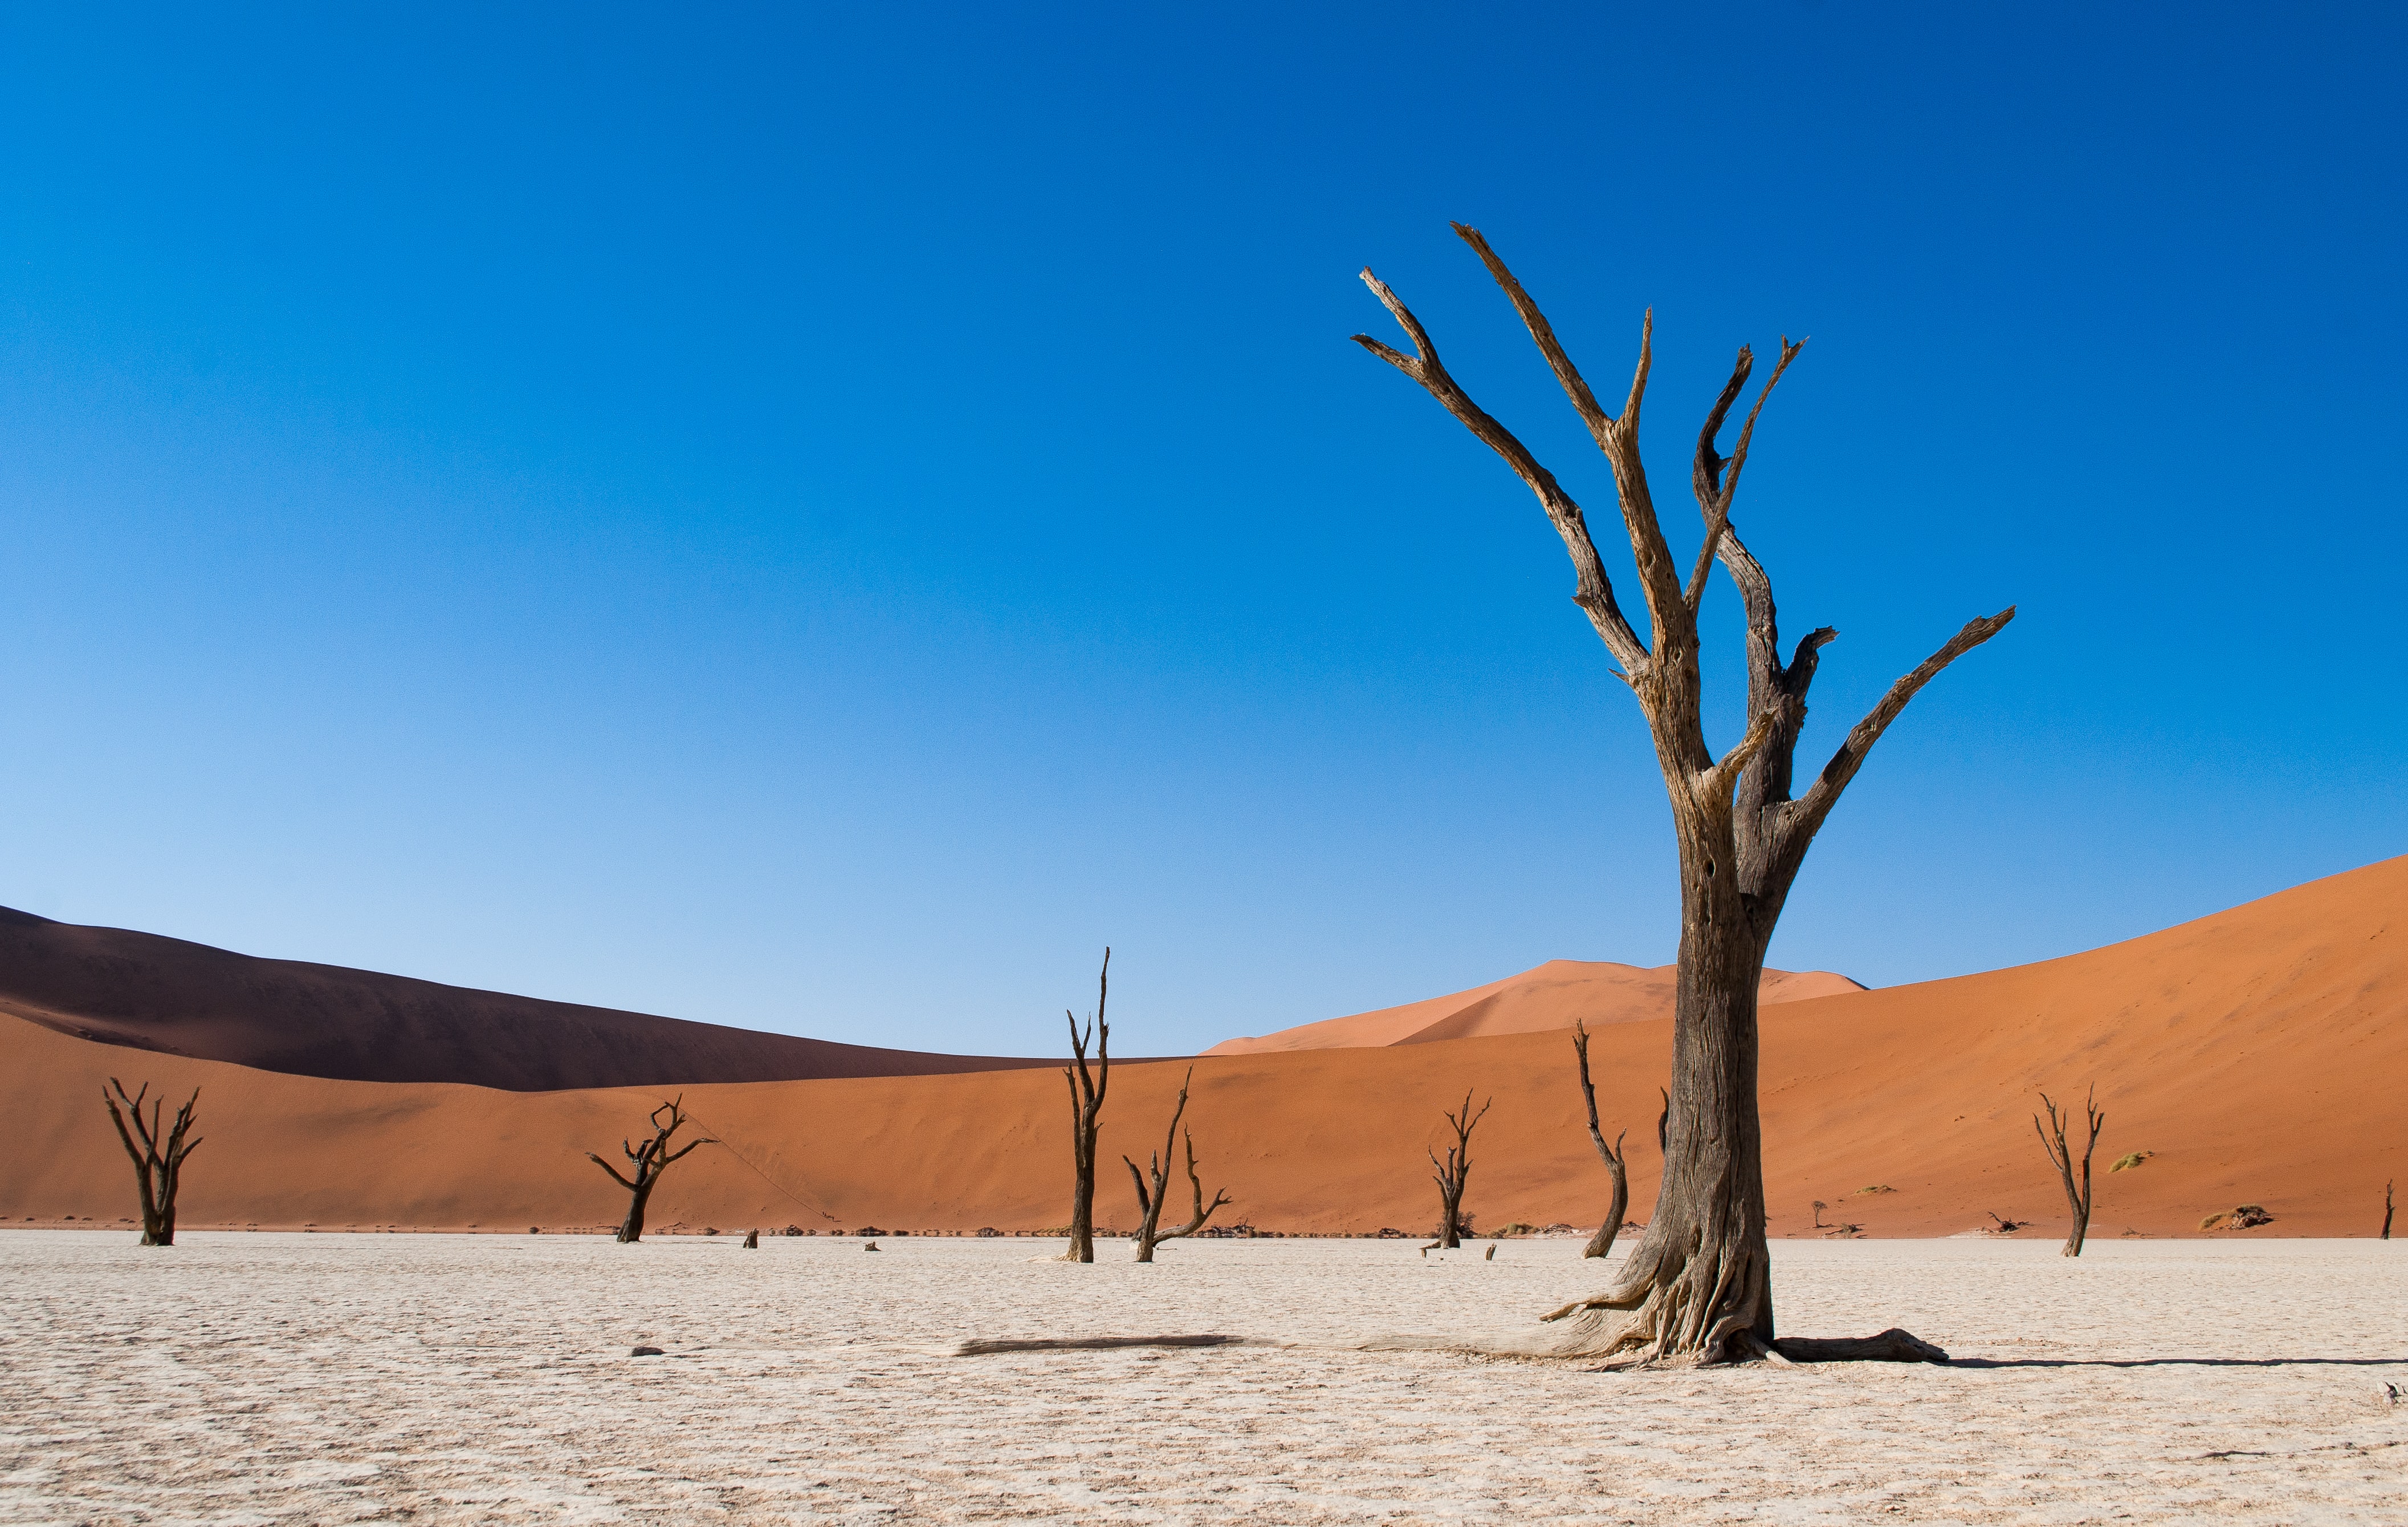 Deadvlei, an extreme desert environment